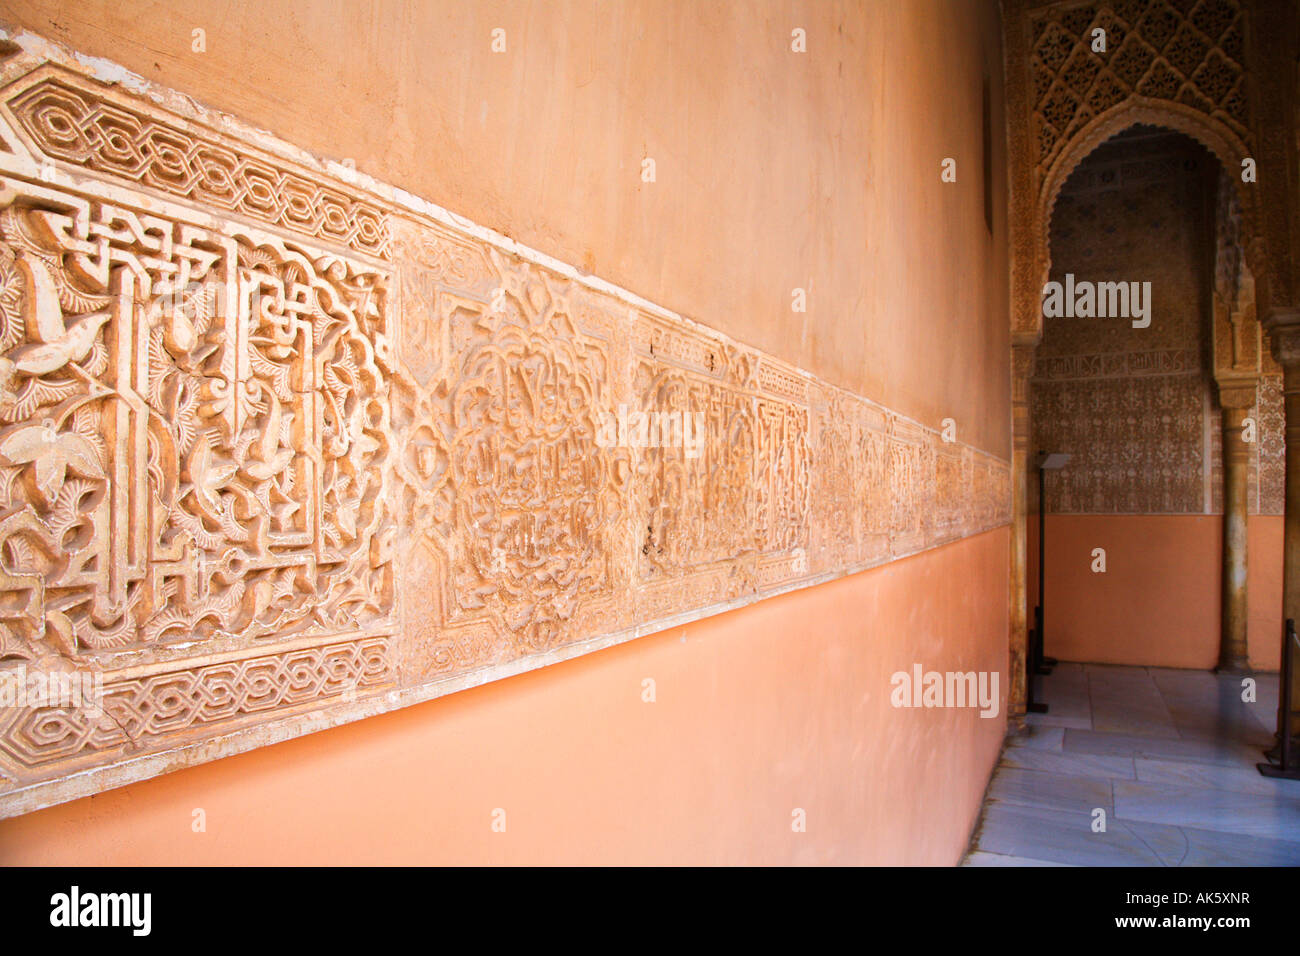 Détail de sculpture Patio de los Leones de l'Alhambra Grenade Espagne Banque D'Images